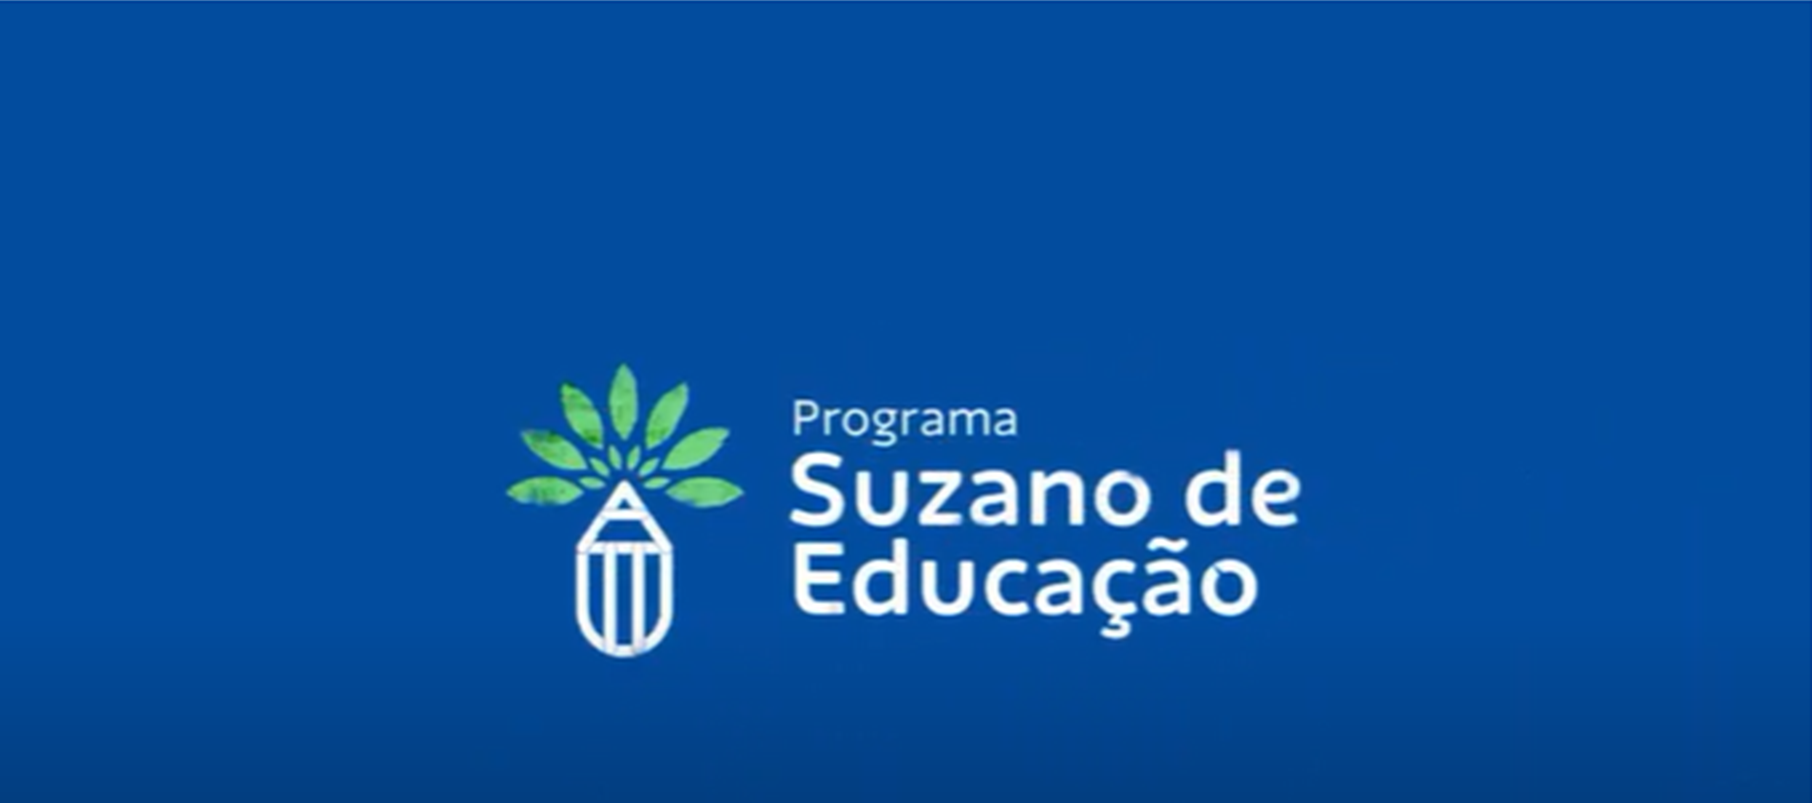 Programa Suzano de Educação inclui nove municípios e passa a atuar em 34 cidades em 2021